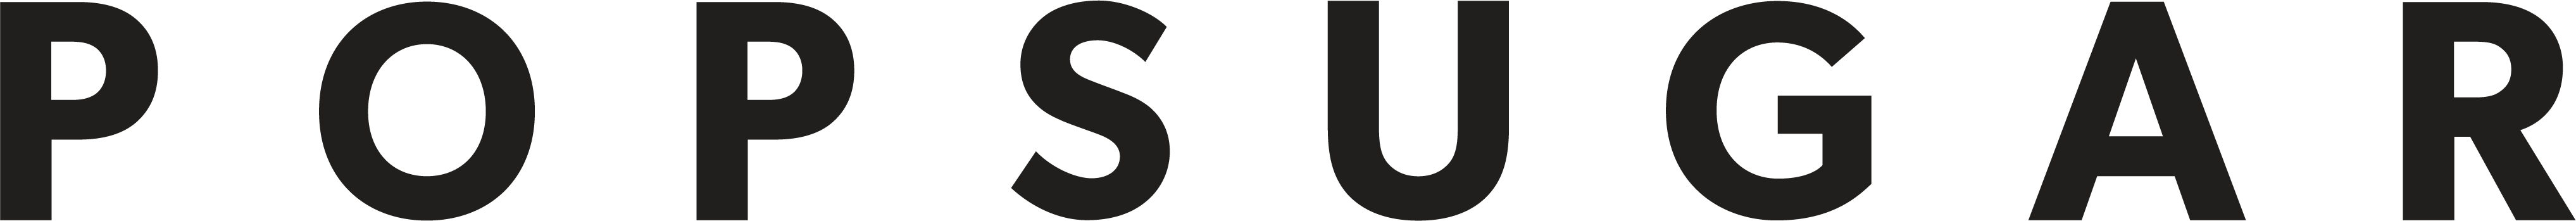 POPSUGAR logo